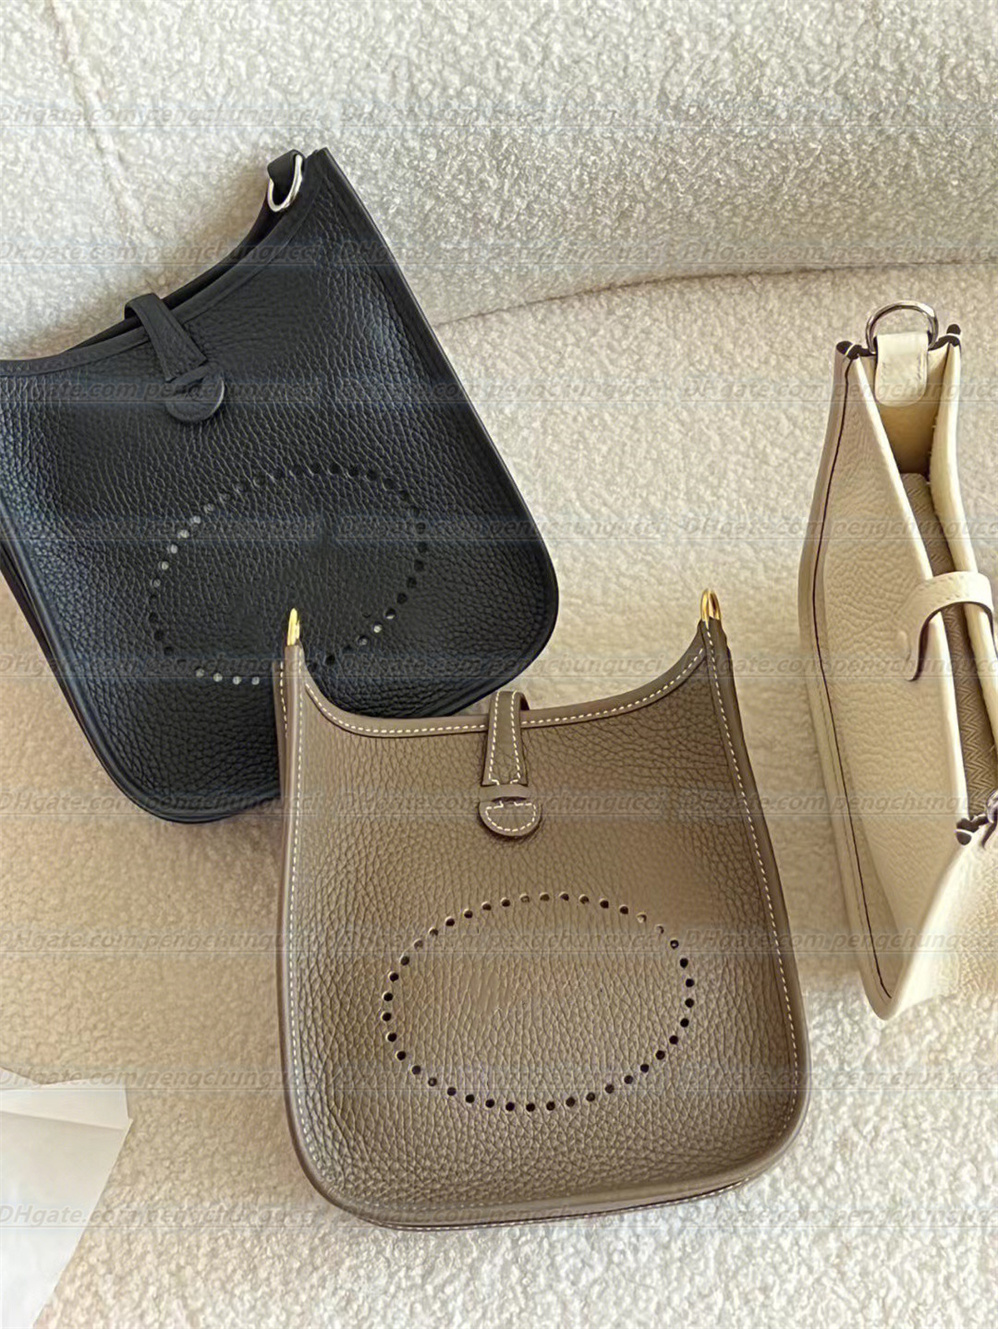 Borse a tracolla in pelle di alta qualità borse in pelle borse di lusso designe portafoglio donna borsa Tote spalle borse